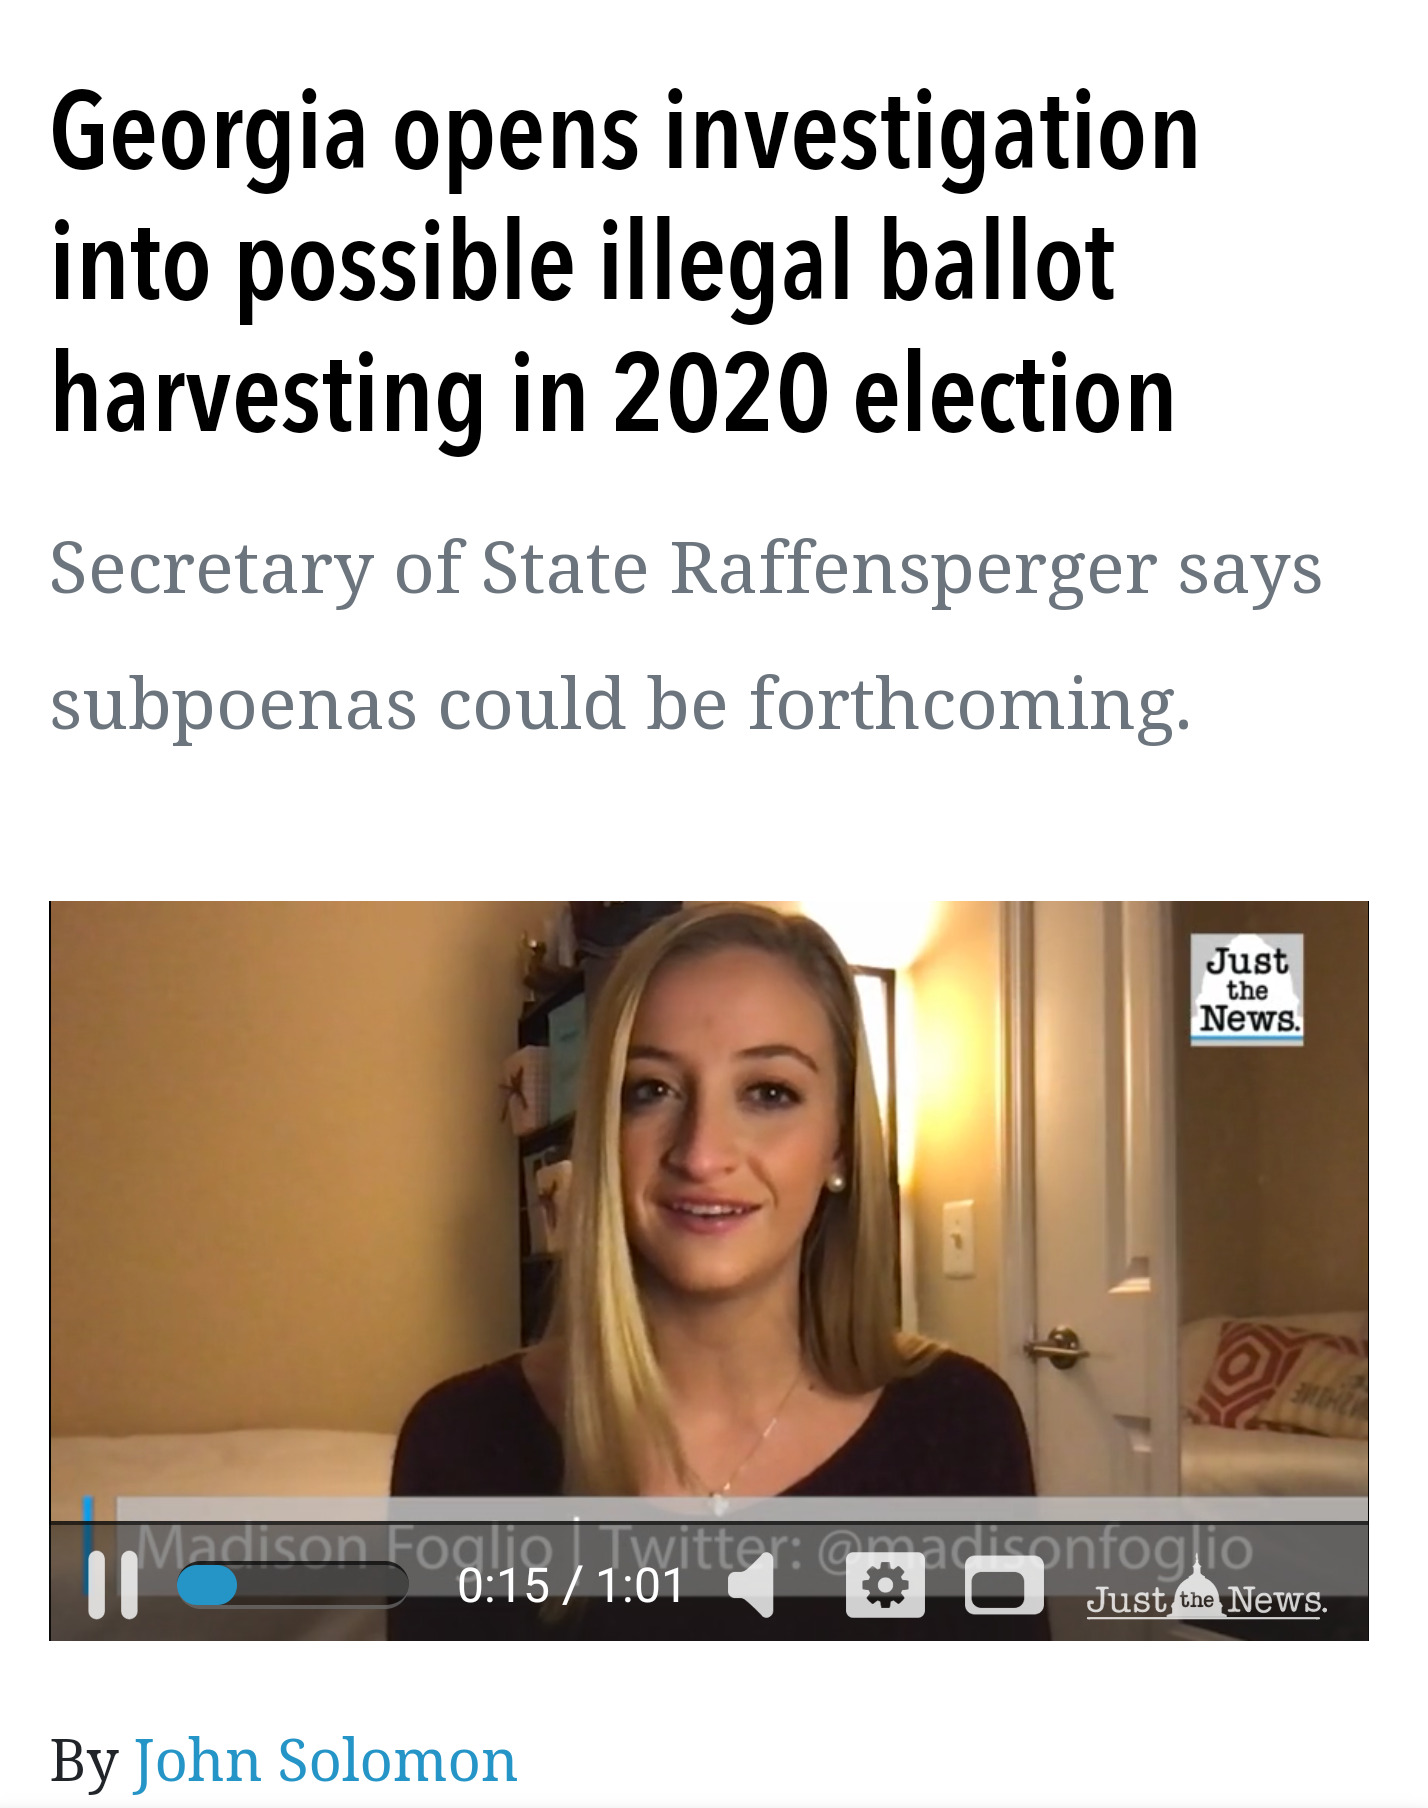 조지아 주, 2020년 선거 불법적 투표 수사 개시 Georgia opens investigation into possible illegal ballot harvesting in 2020 election